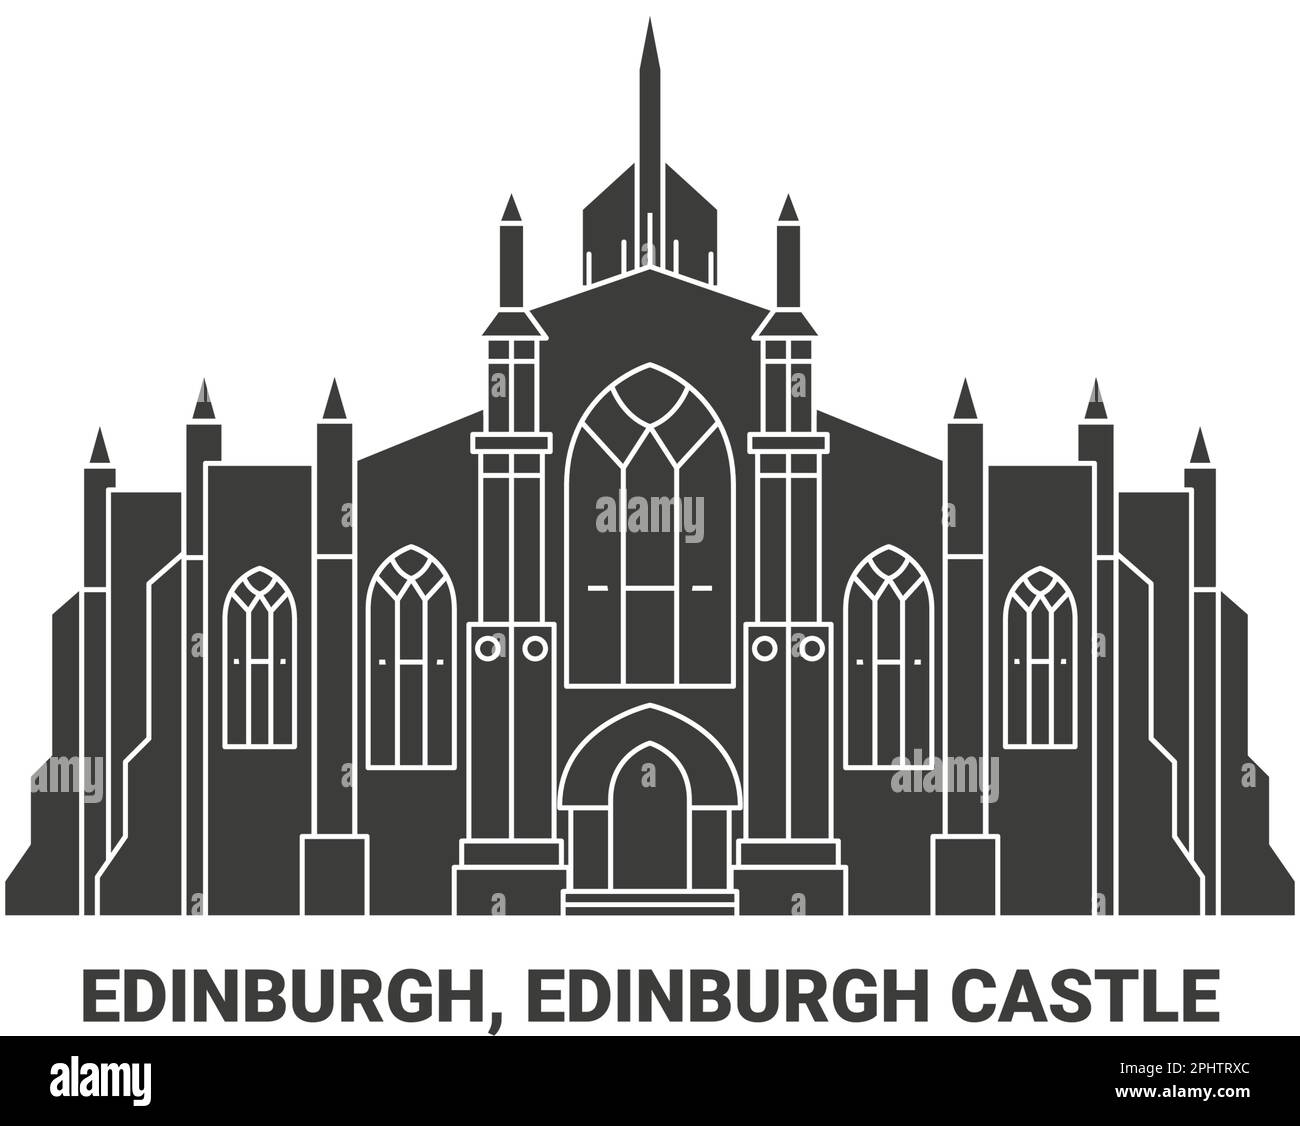 Uk, Edinburgh, Edinburgh Castle, travel landmark vector illustration Stock Vector